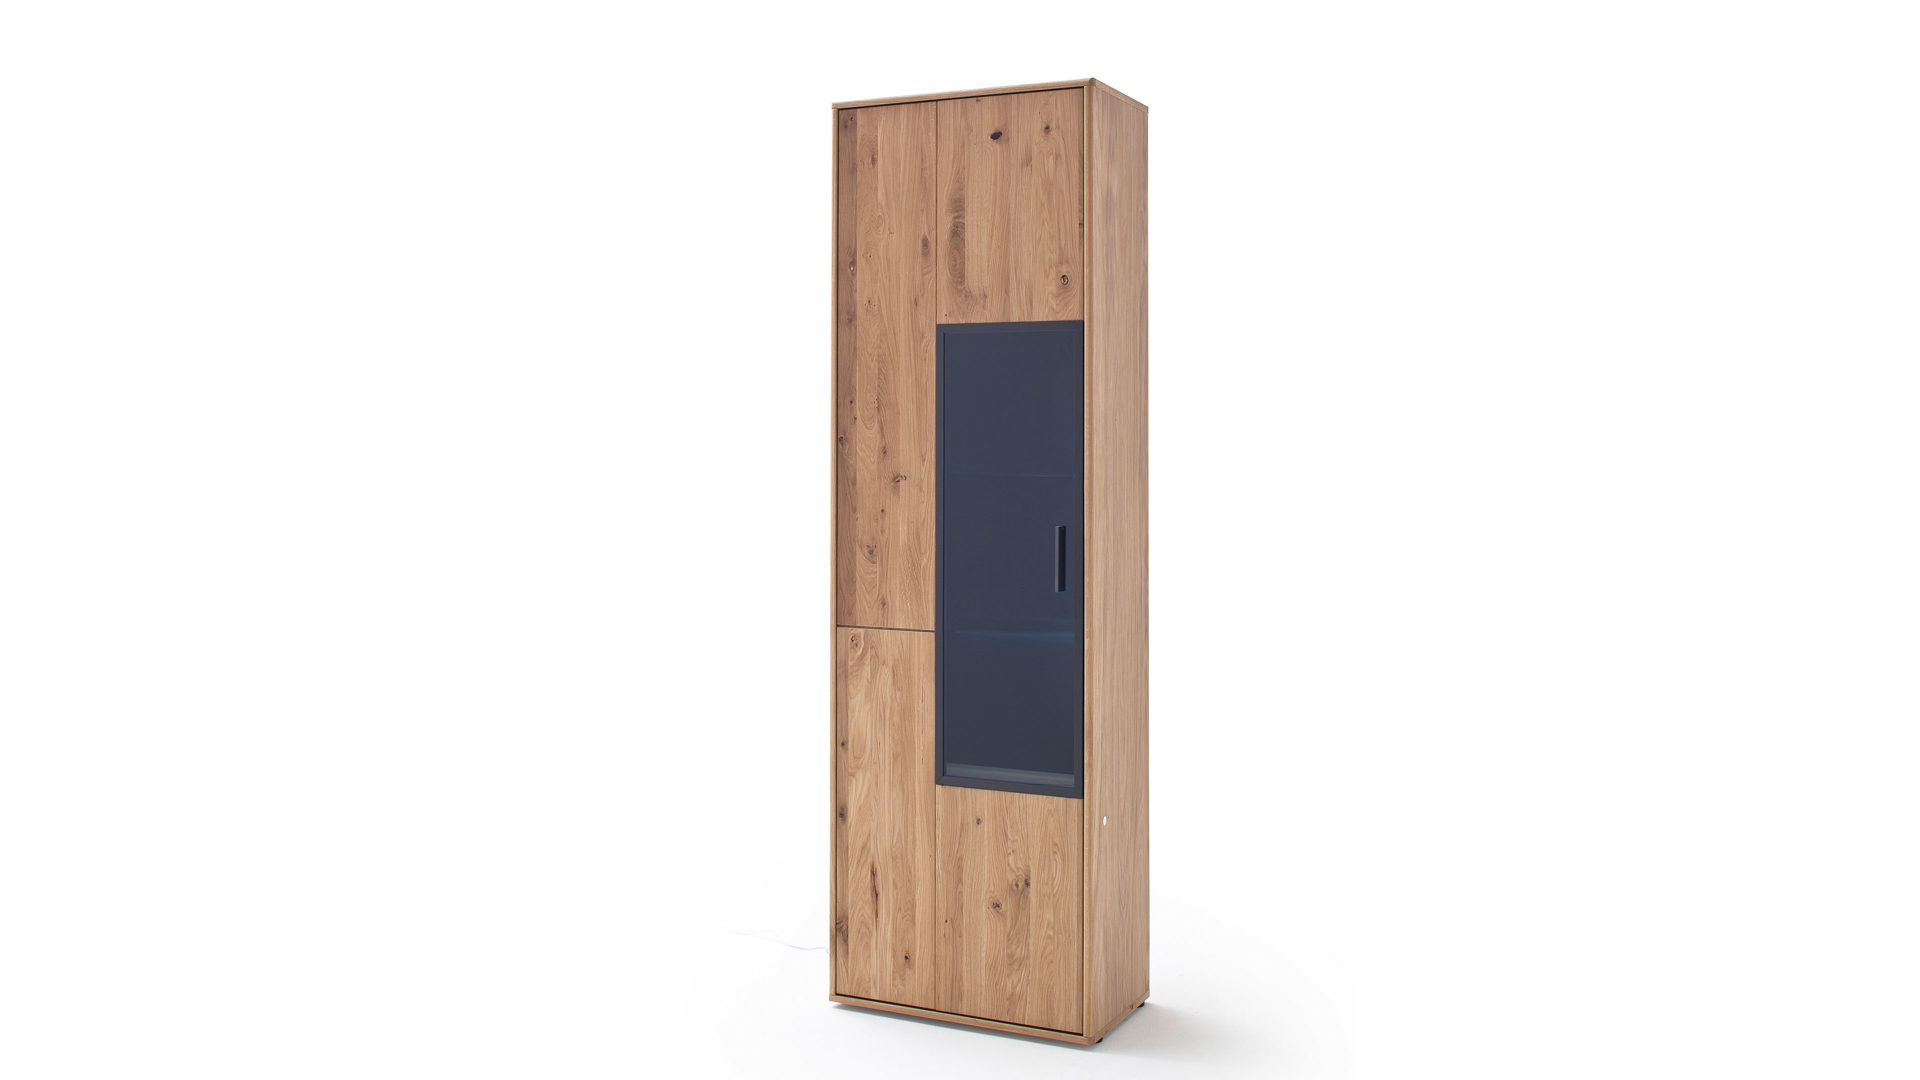 Vitrine Mca furniture aus Holz in Holzfarben Vitrinenschrank Bianco geölte Asteiche & anthrazitfarbene Lackoberflächen – eine Tür